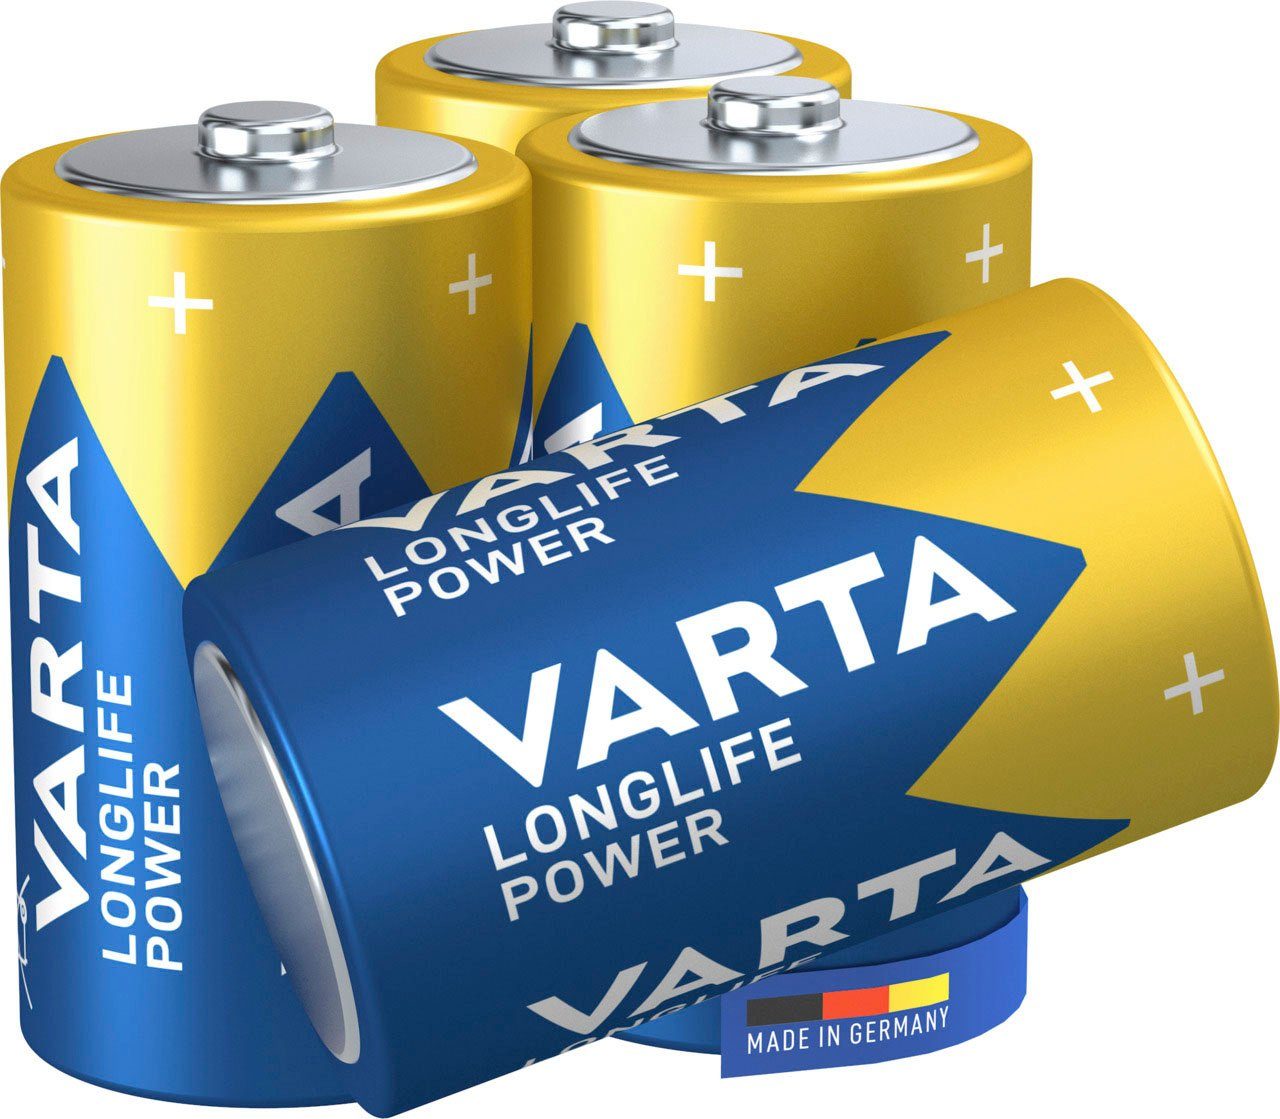 VARTA 4er Pack LONGLIFE POWER D Batterie, (1,5 V, 4 St), Power Alkaline D Mono LR20 4er Pack - Made in Germany